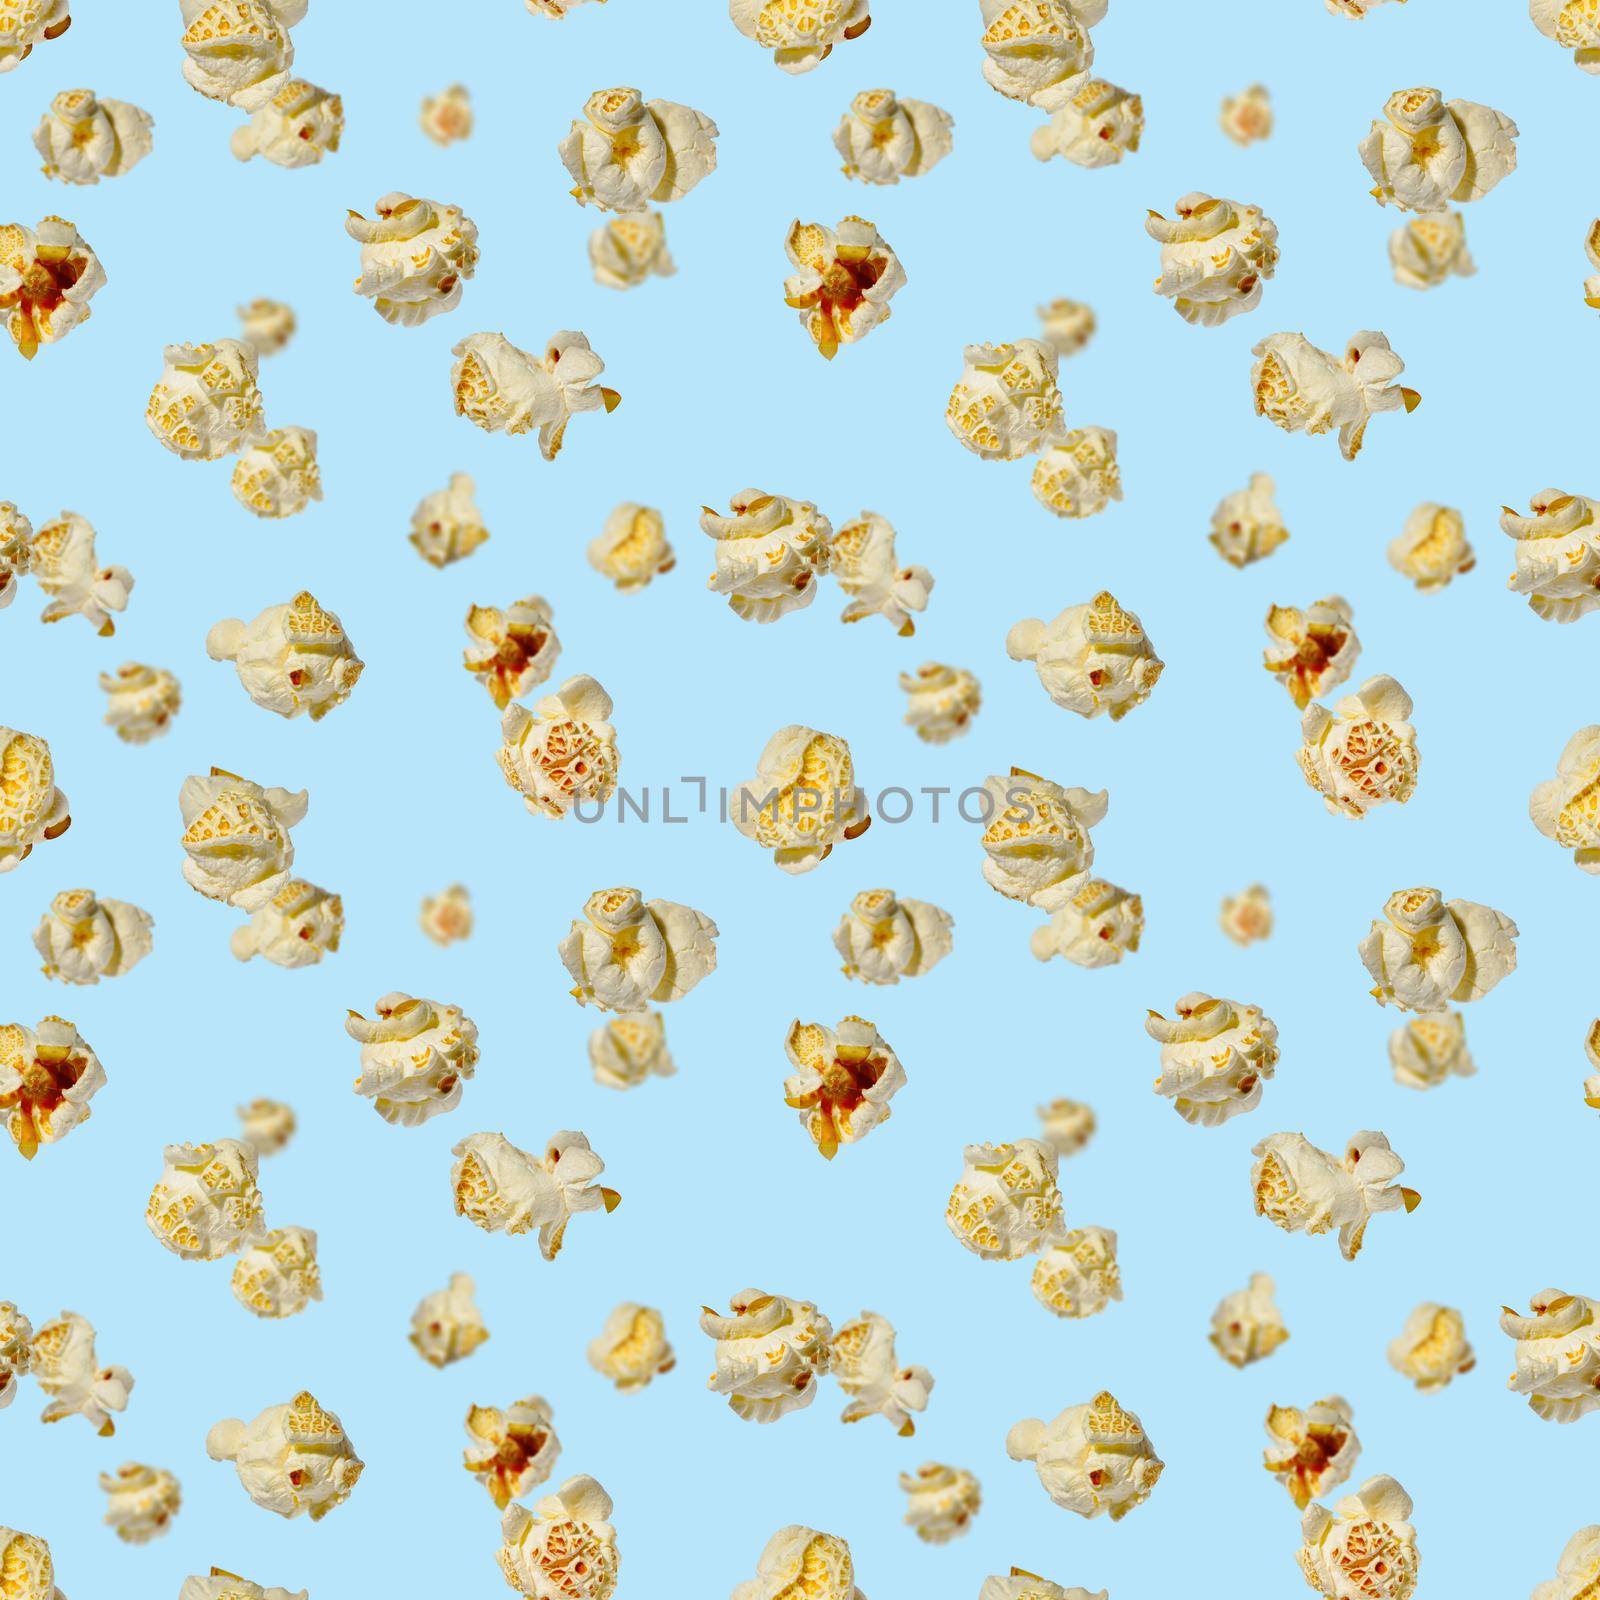 seamless pattern - popcorn. popcorn on a blue background, pattern by PhotoTime